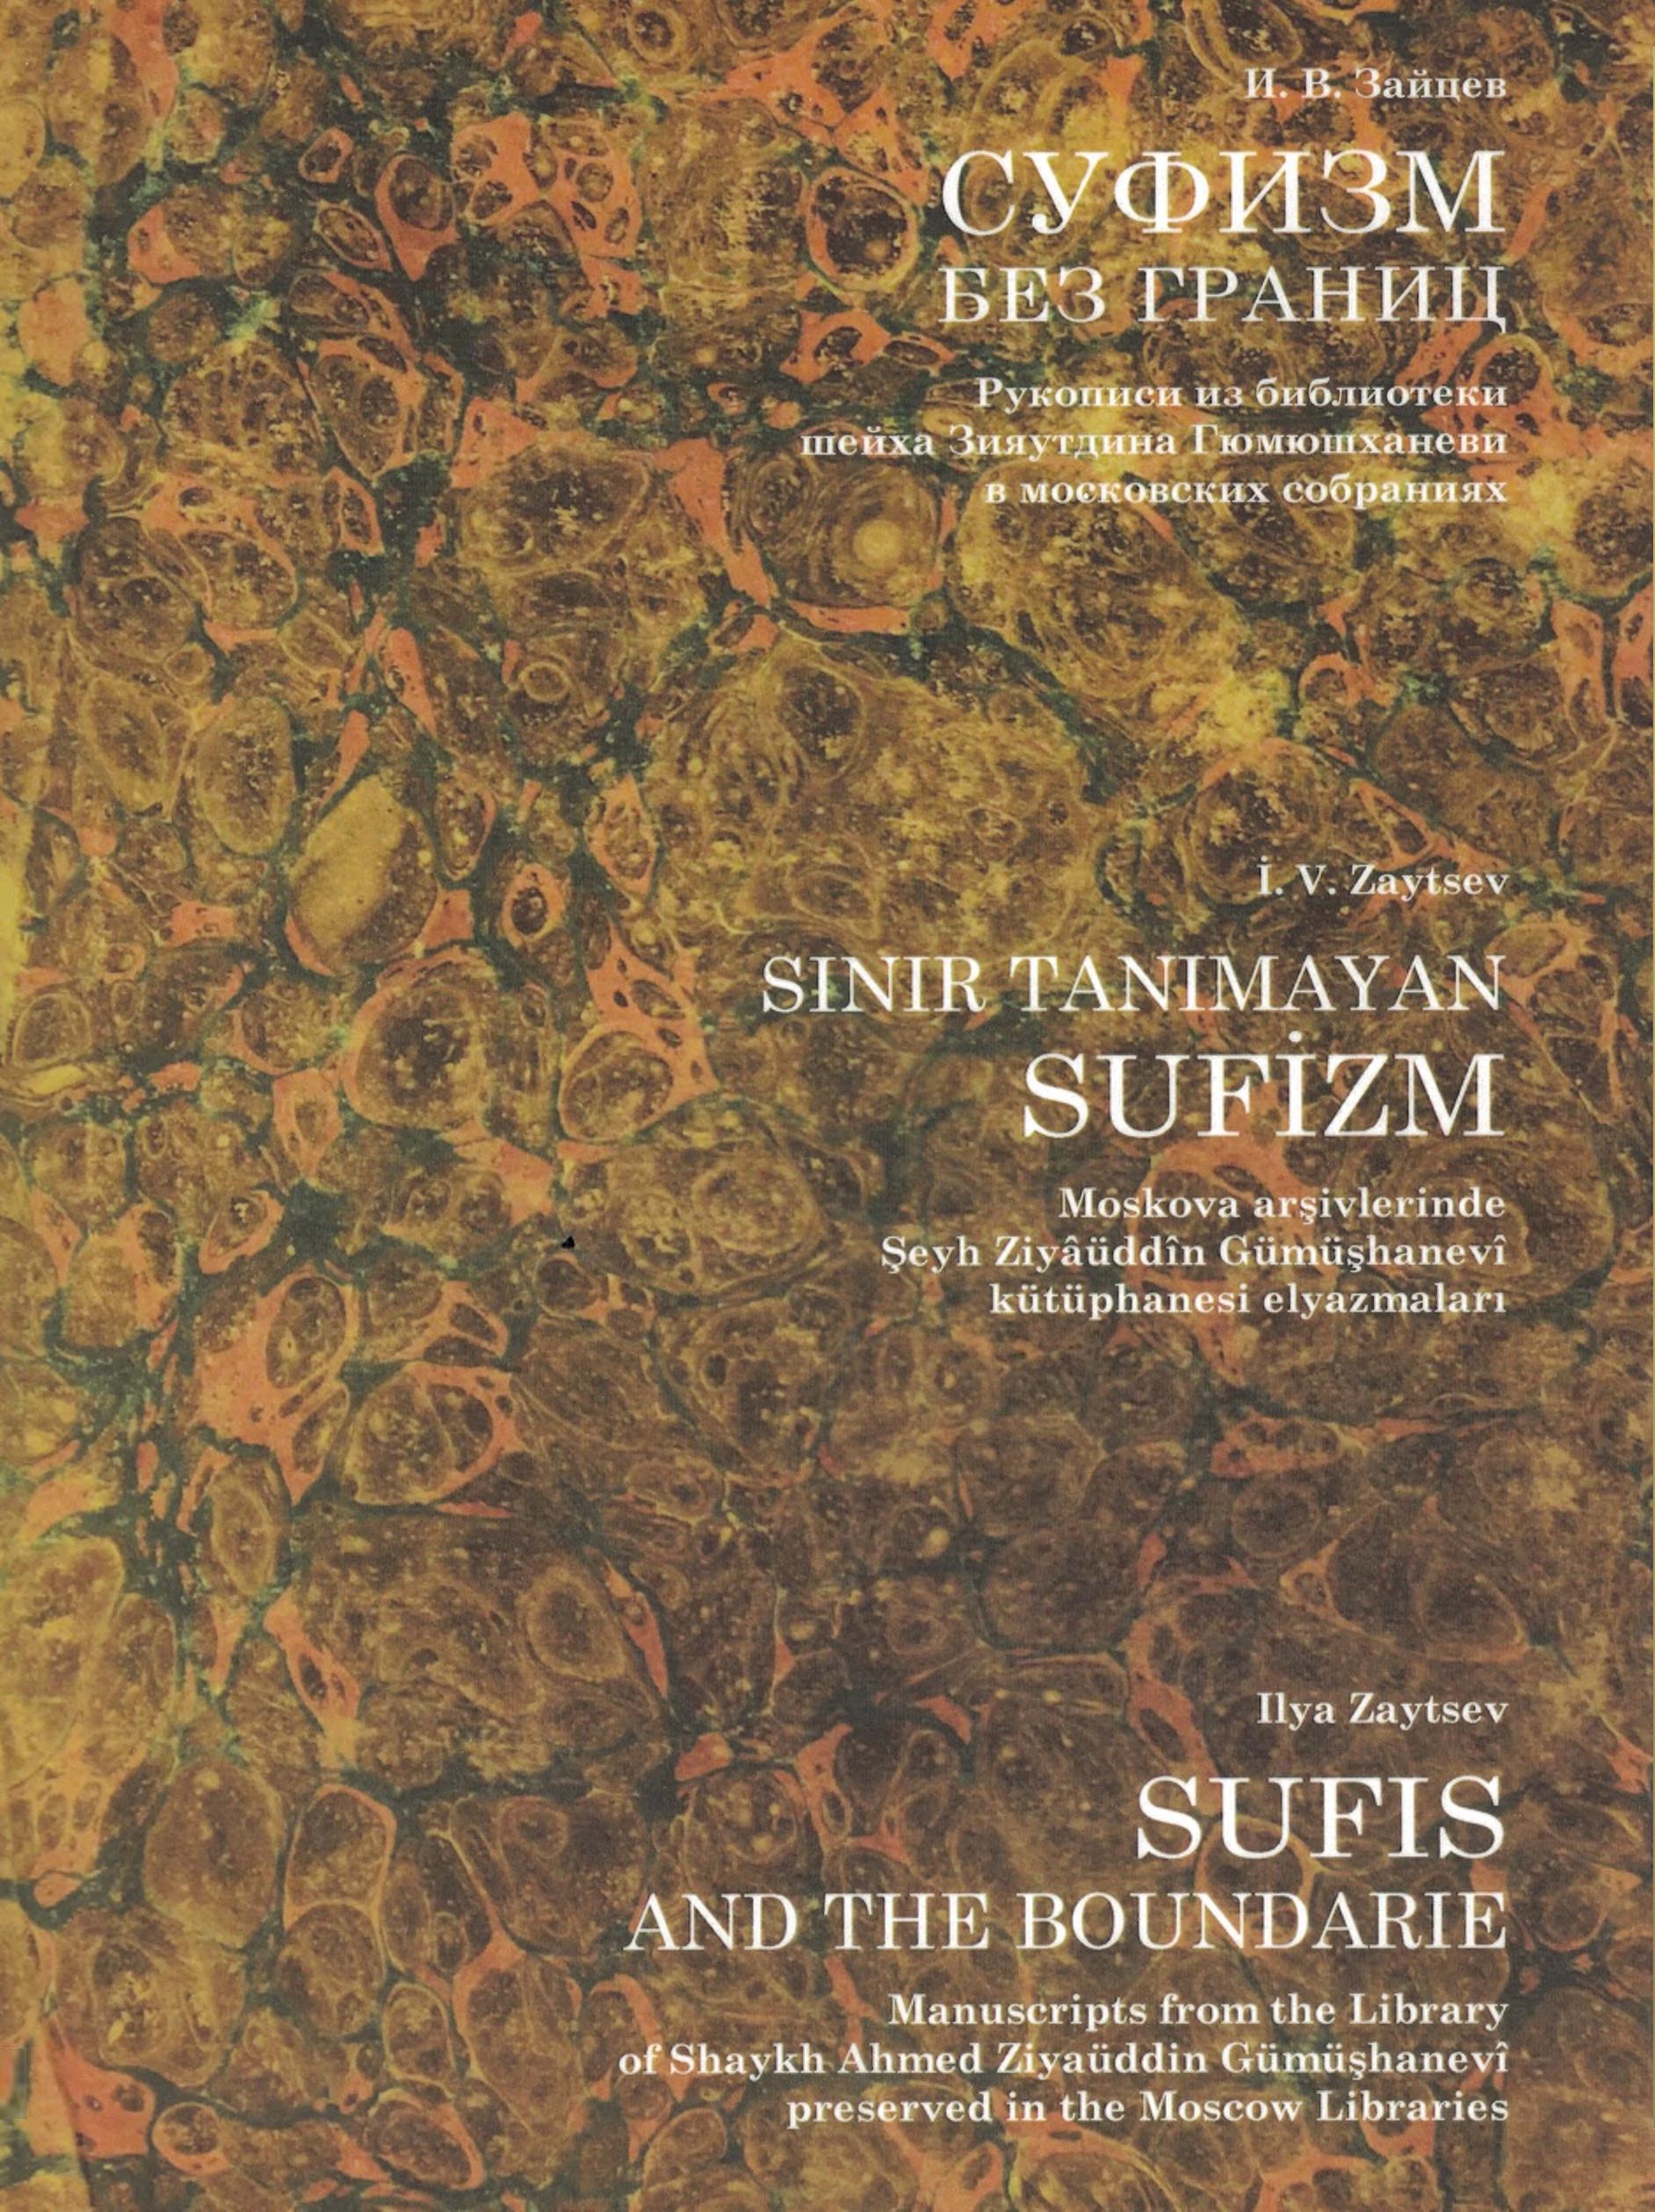 Суфизм без границ : рукописи из библиотеки шейха Зияутдина Гюмюшханеви в московских собраниях